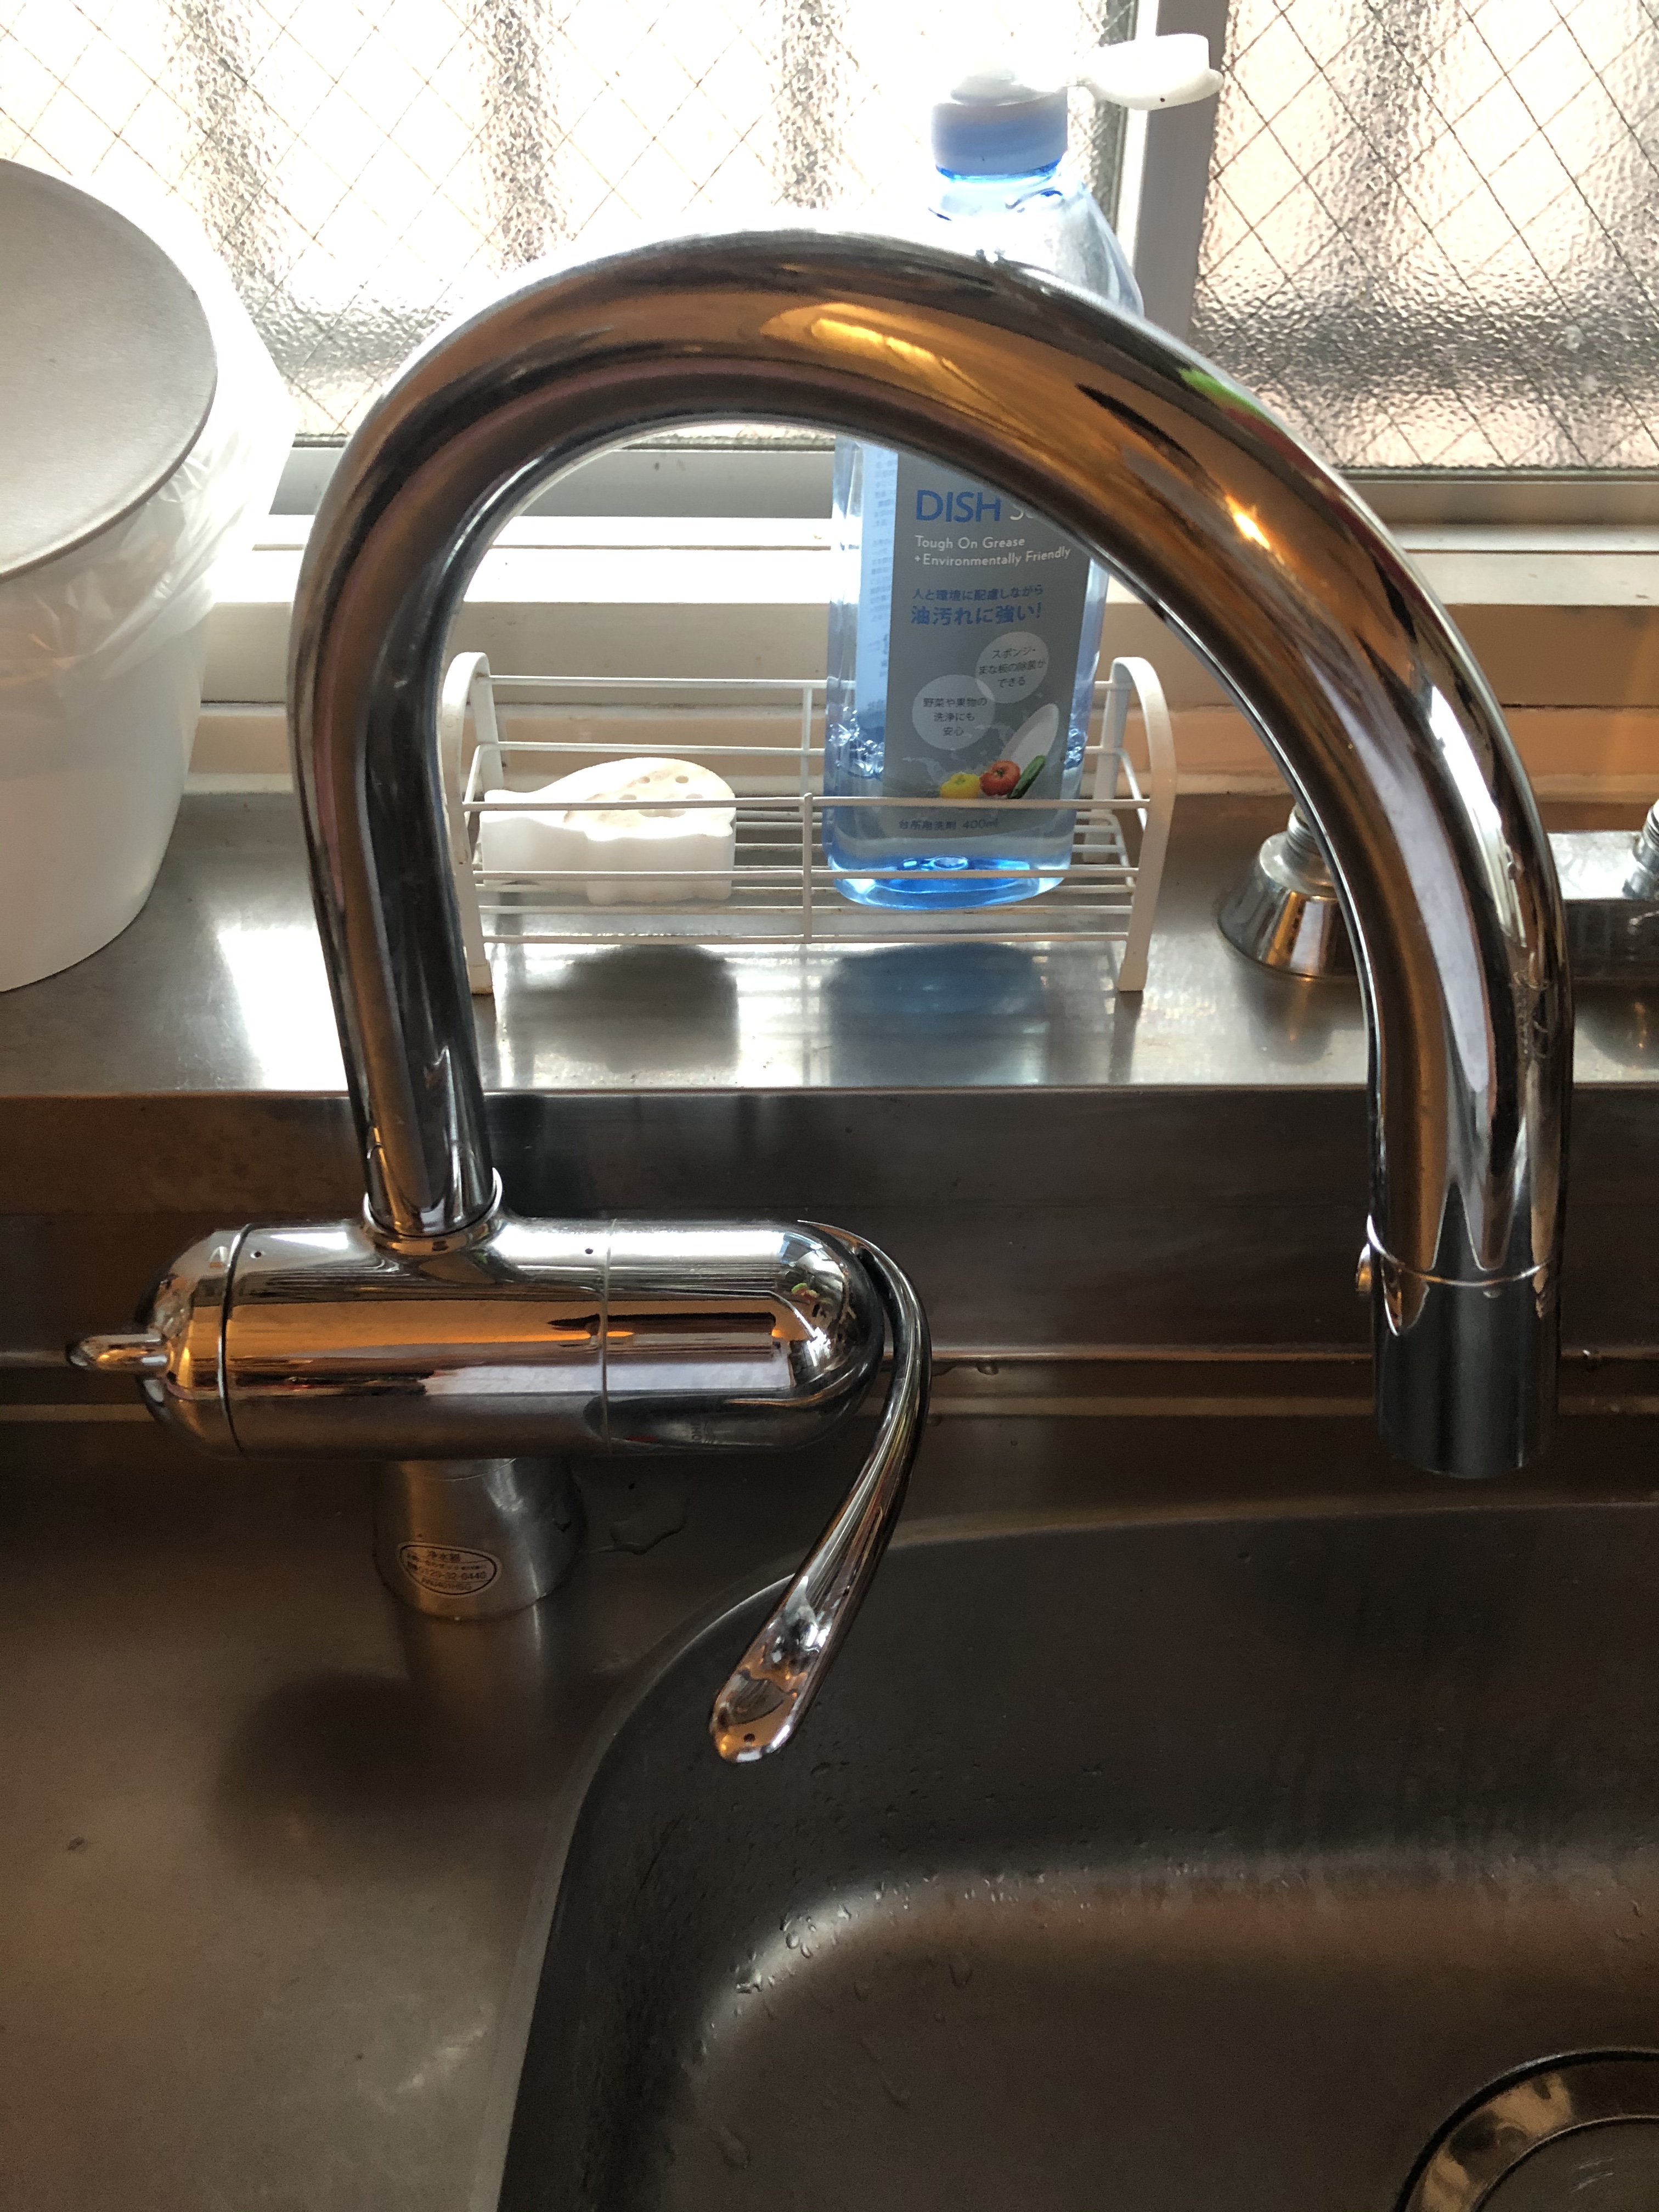 グローエのキッチン水栓の水はねを解決！GROHEゼドラシリーズの吐水口整流キャップを泡沫キャップに交換   洗面台やトイレ・給湯器・エアコンなどの交換なら便利屋Handyman